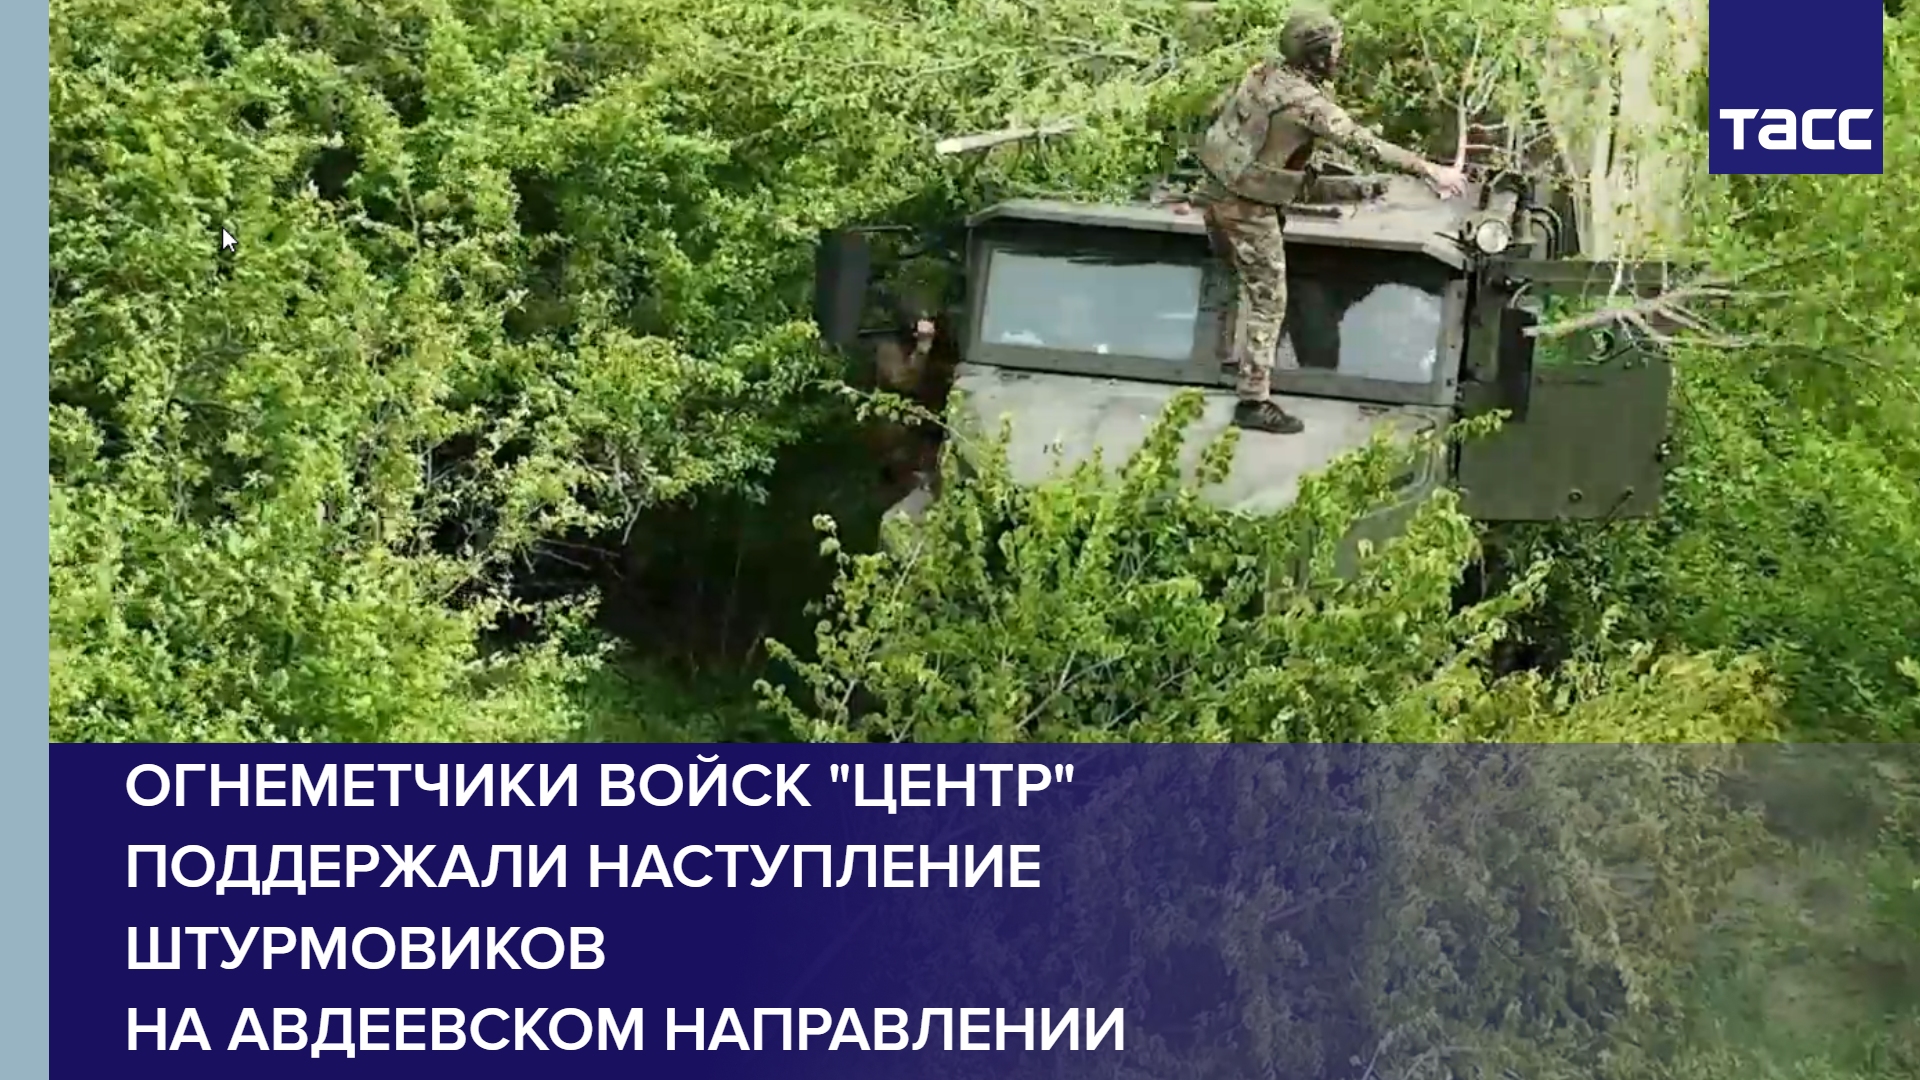 Огнеметчики войск "Центр" поддержали наступление штурмовиков на авдеевском направлении